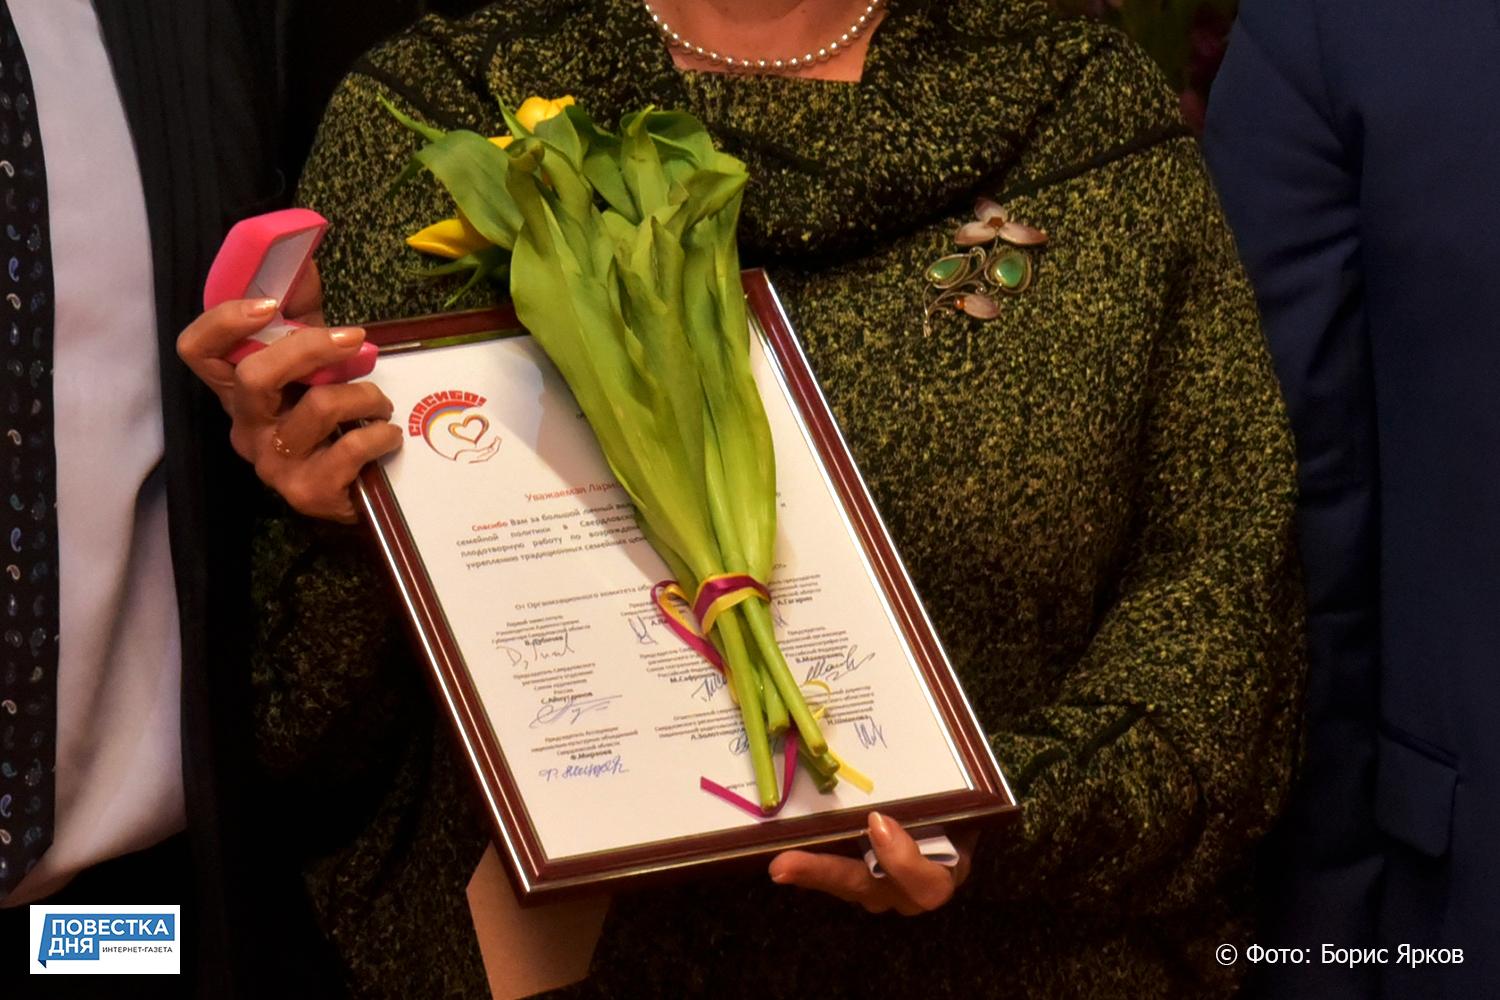 Восемь уральских женщин накануне 8 Марта получили награду за добрые дела